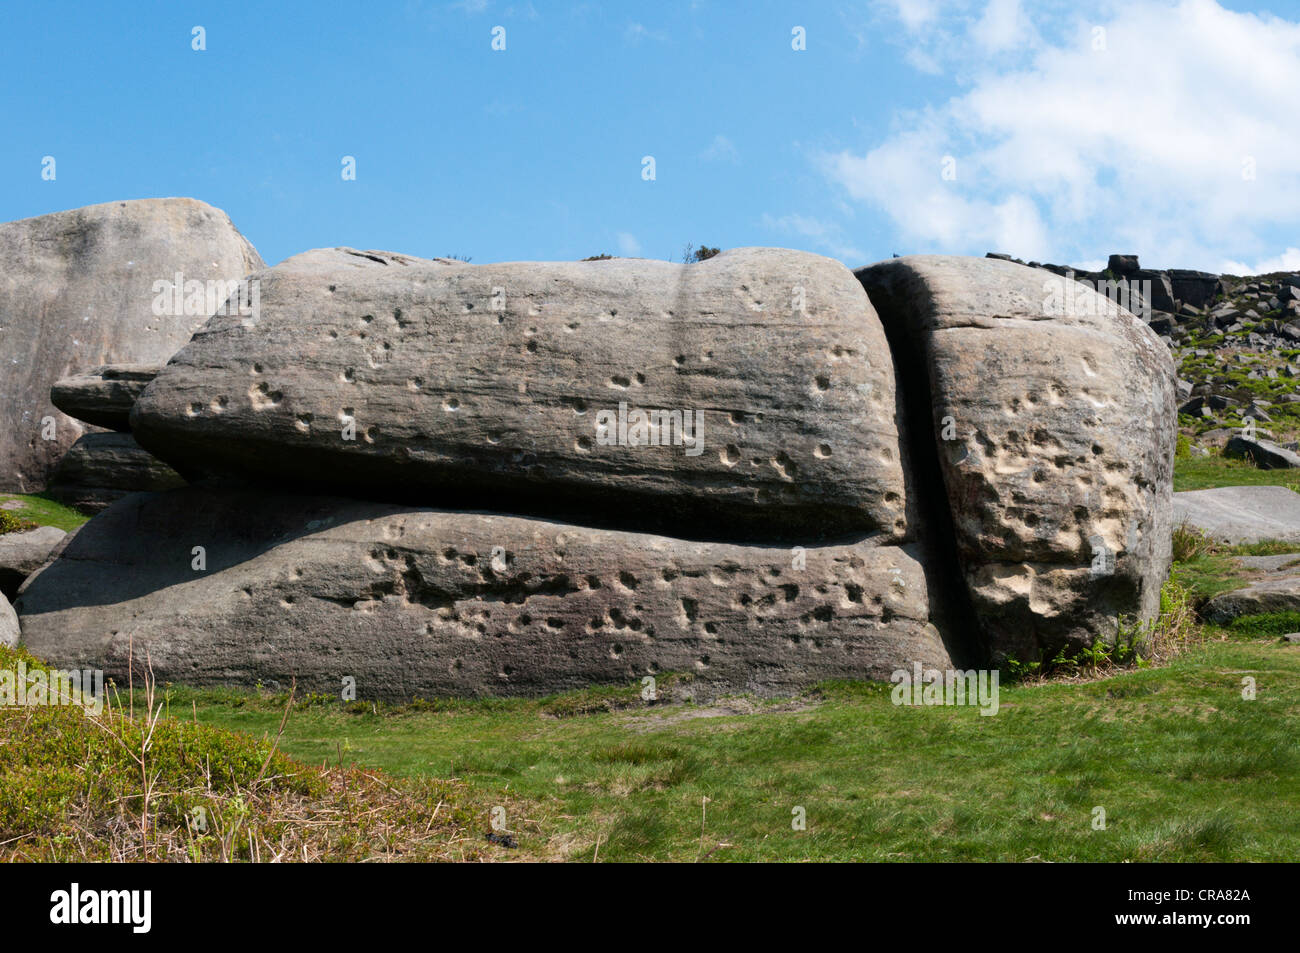 Diese Markierungen in einem Felsblock bei Burbage Rocks, im englischen Peak District, sind Einschusslöcher aus Armee Übungen im zweiten Weltkrieg. Stockfoto